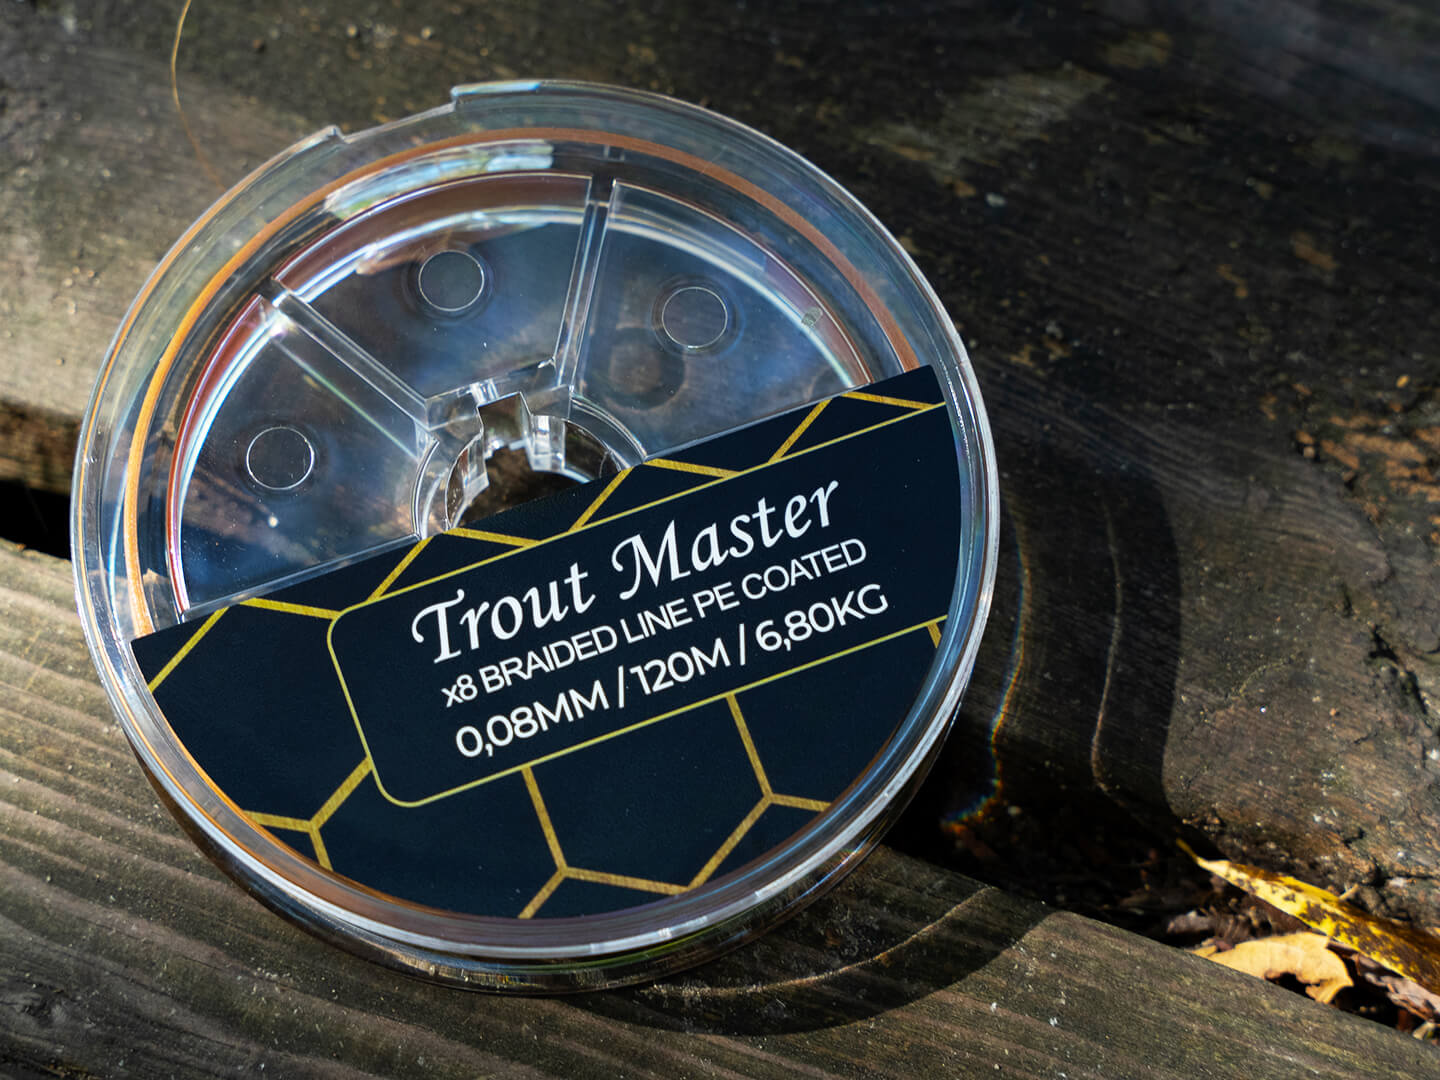 Spro Trout Master Fine Gold X8 PE Geflochtene Schnur (120m)